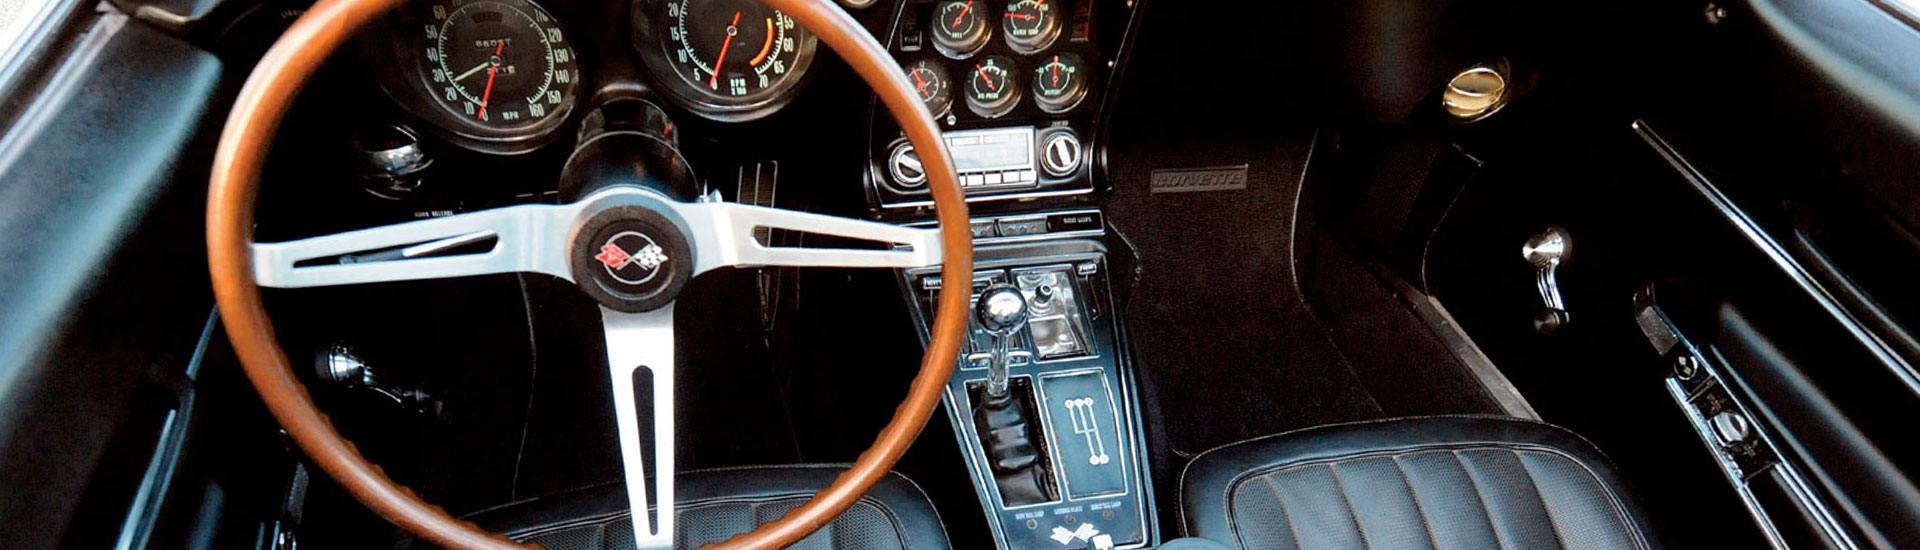 1968 Chevrolet Corvette Dash Kits